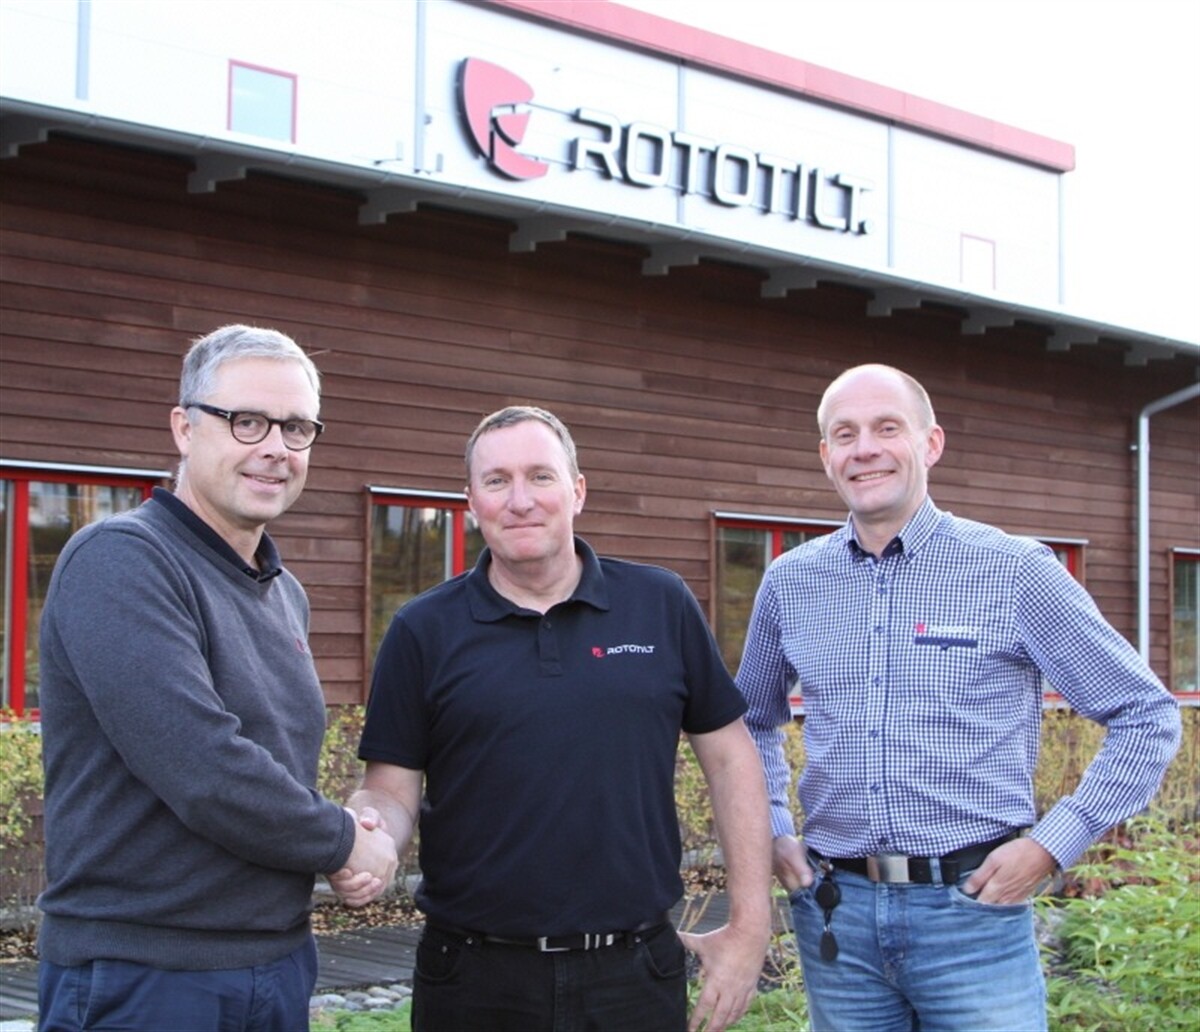 Rototilt embraces the UK market with dedicated company